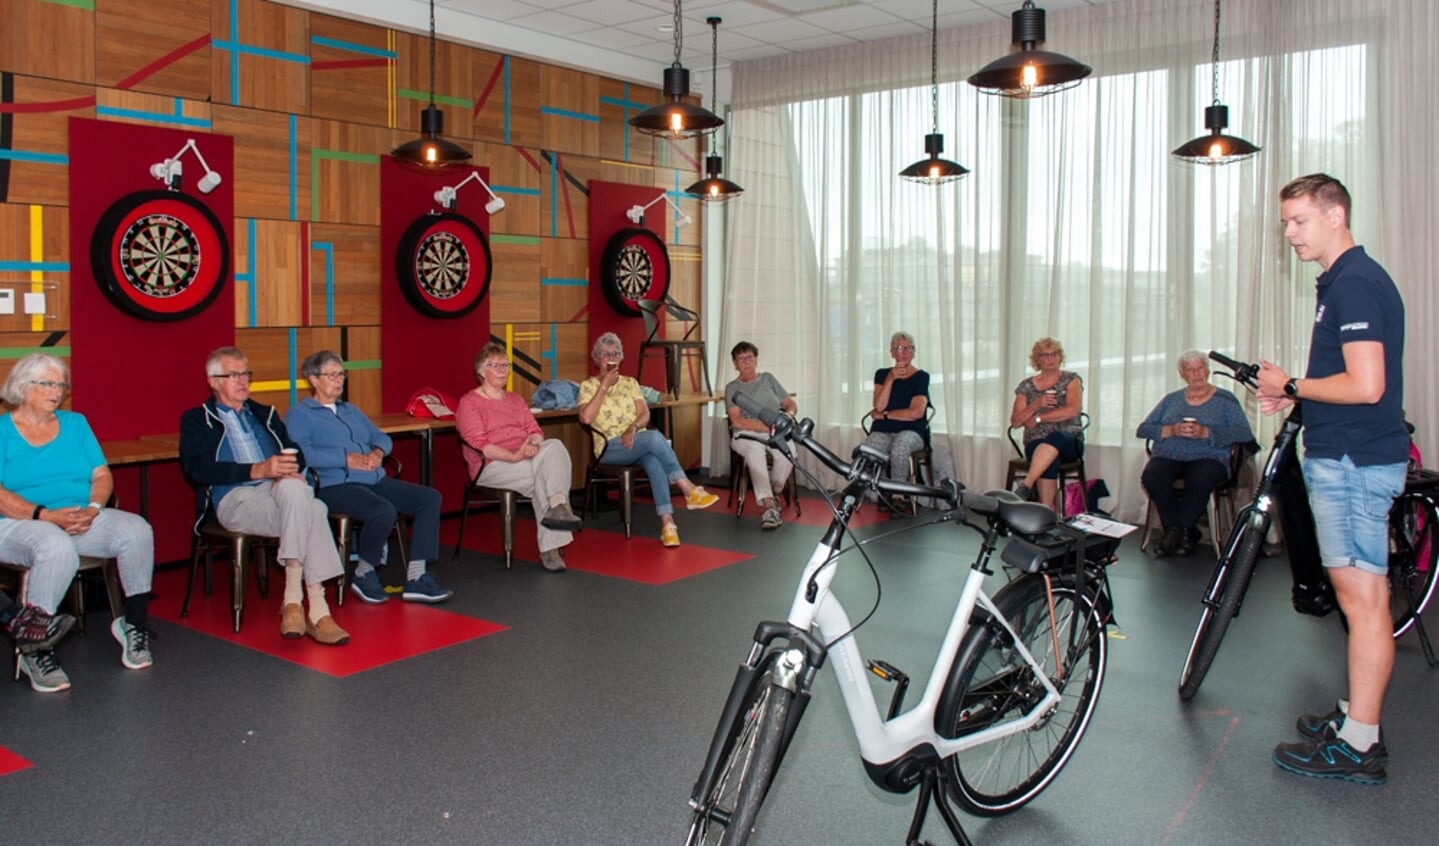 Wouter, medewerker van der Linde, geeft uitleg over veilig fietsen